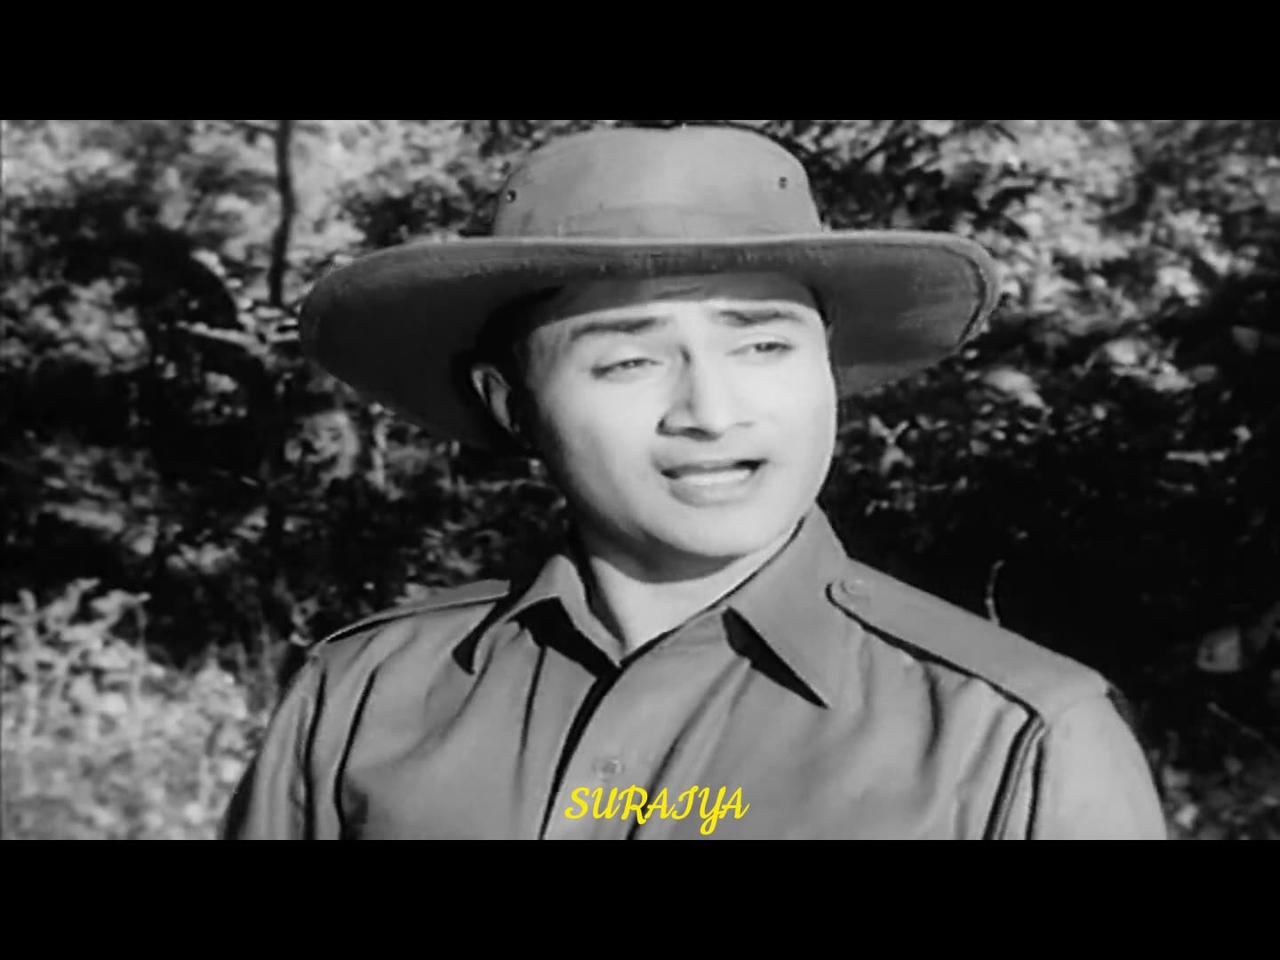 Main Zindagi Ka Saath Nibhata Chala Gaya - Mohammed Rafi | Popular Hindi Song | Hum Dono 1961